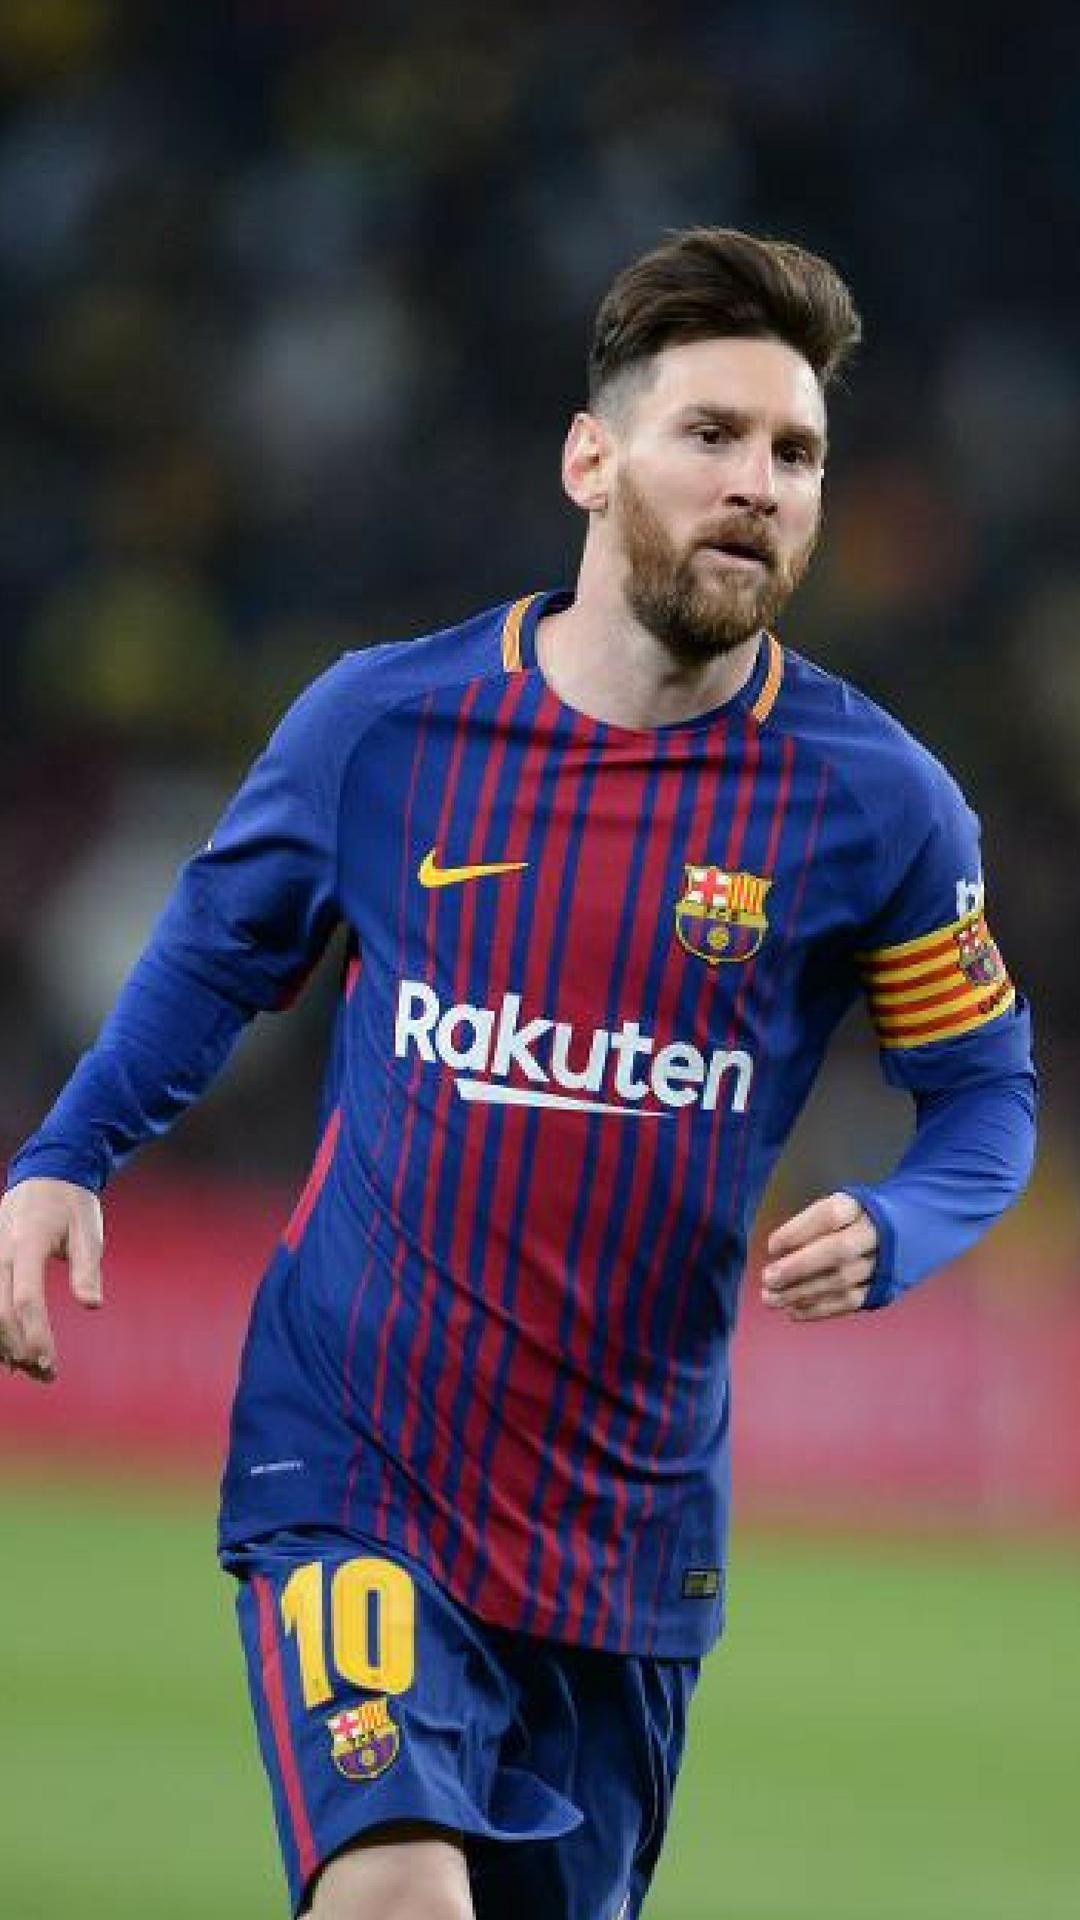 1080 x 1920 · jpeg - Messi Wallpaper Full Screen : 50 4k Ultra Hd Lionel Messi Wallpapers ...